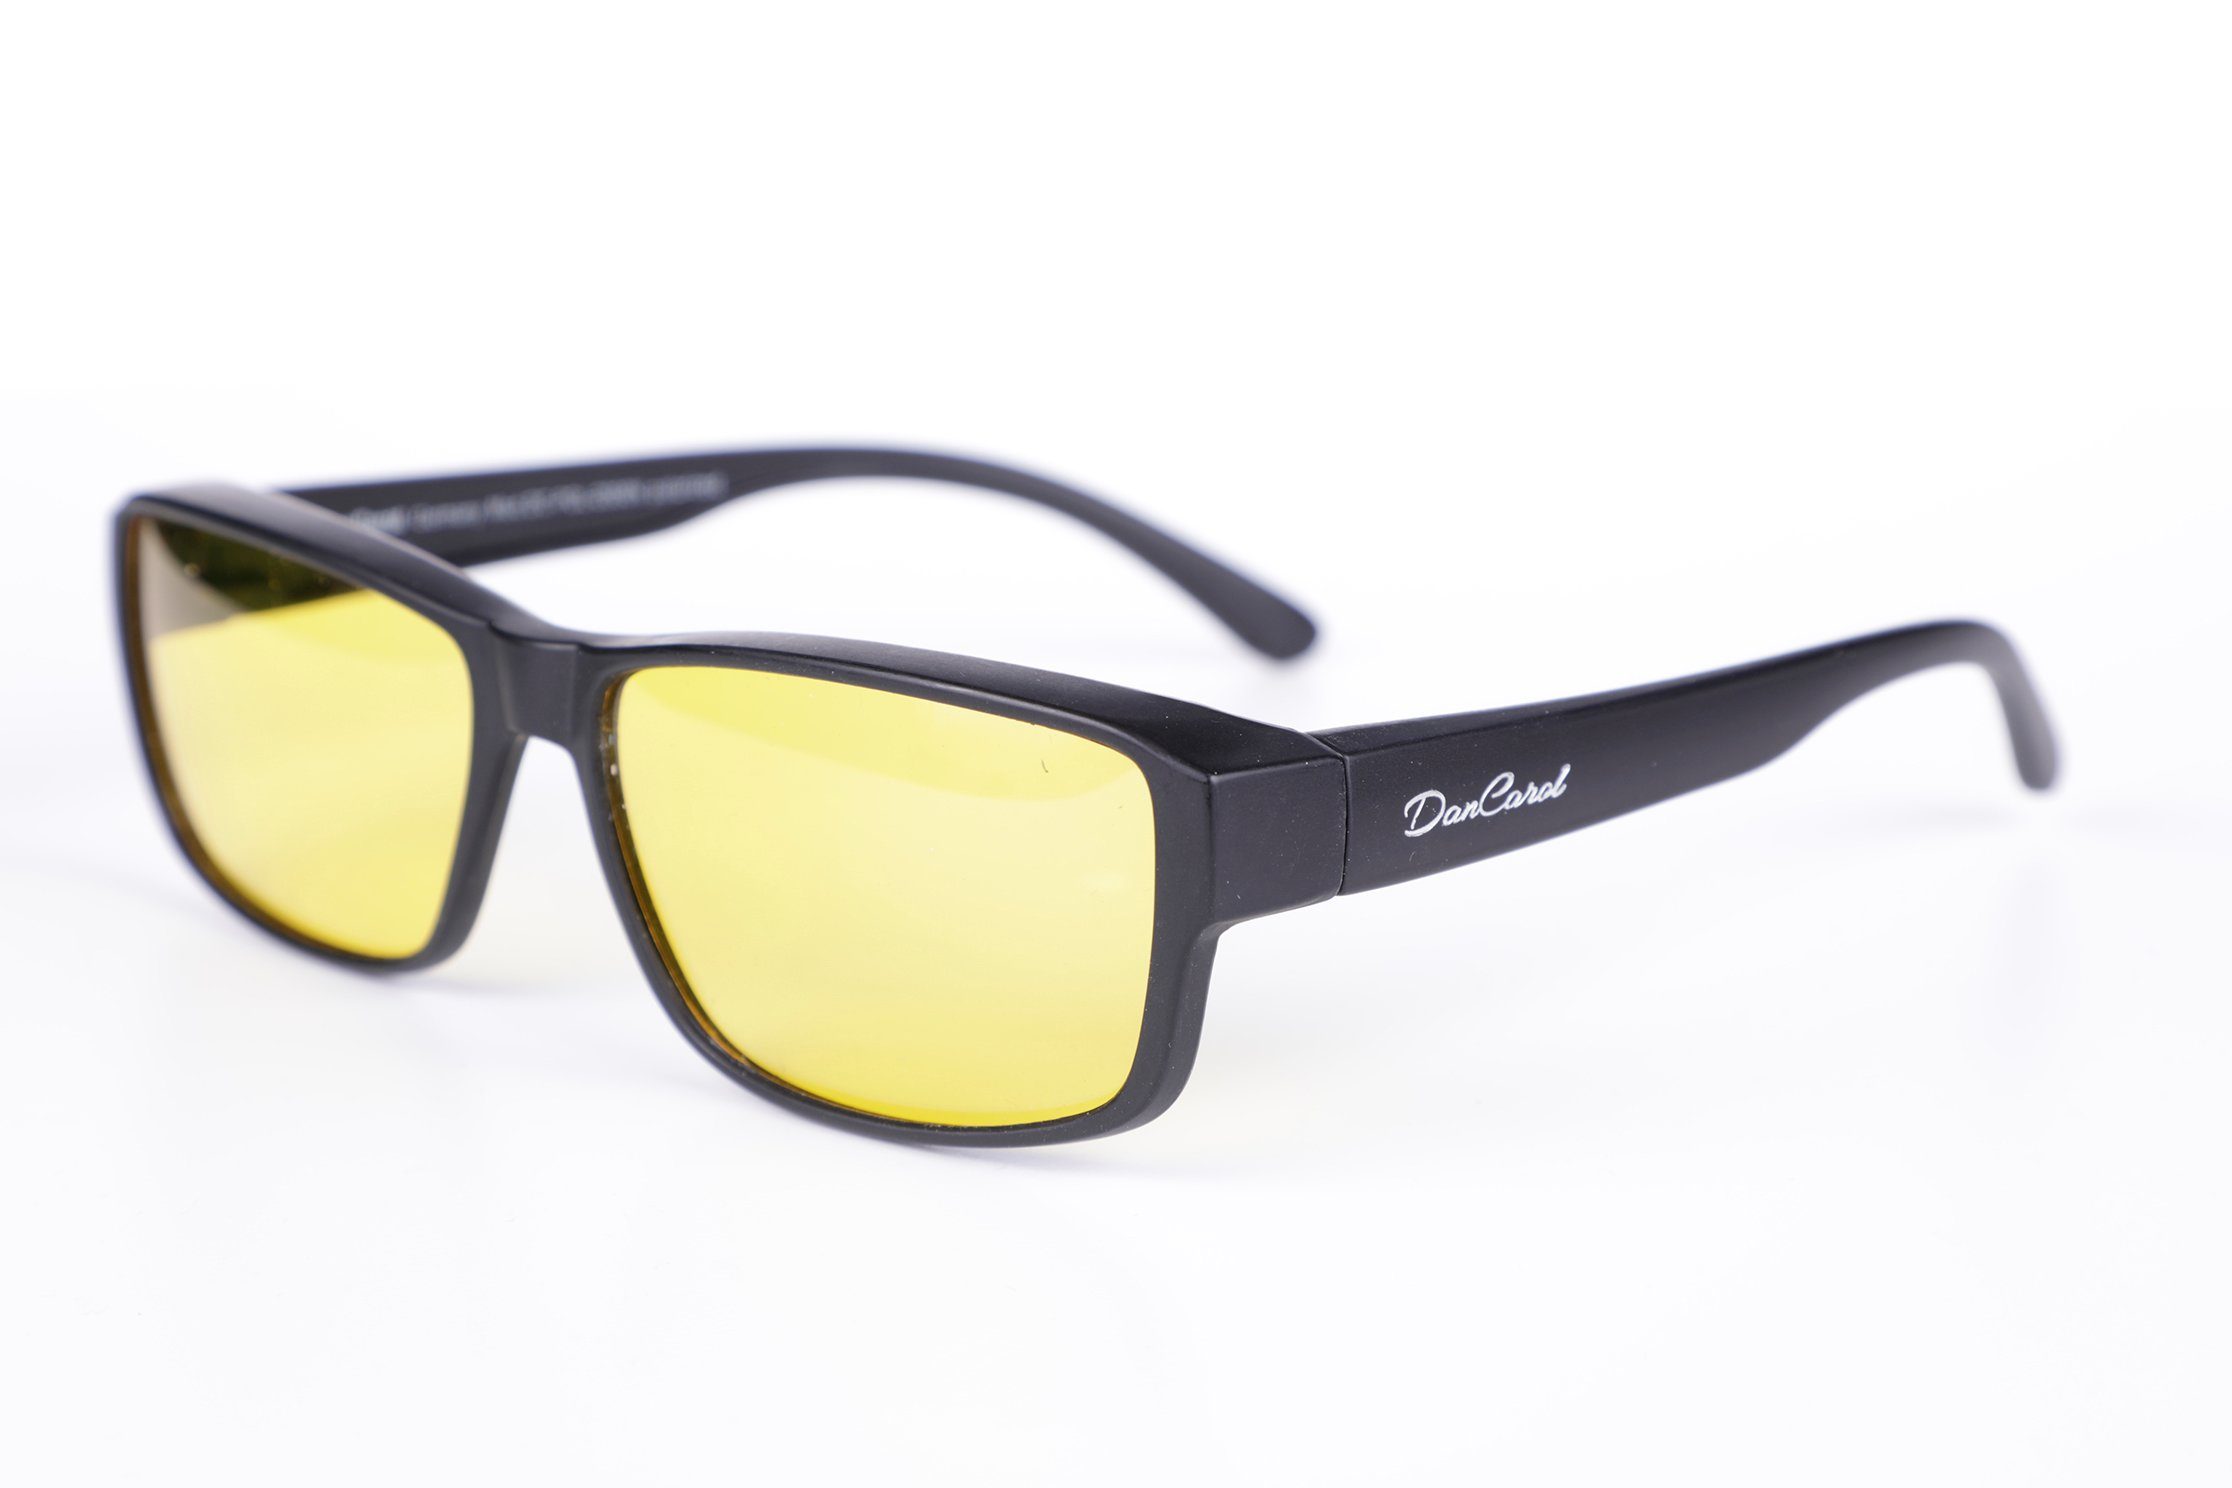 DanCarol Sonnenbrille DC-POL-2006-Die Überbrille, ideal für Brillenträger besonderen Schutz vor Licht- und Blendeffekten aller Art!